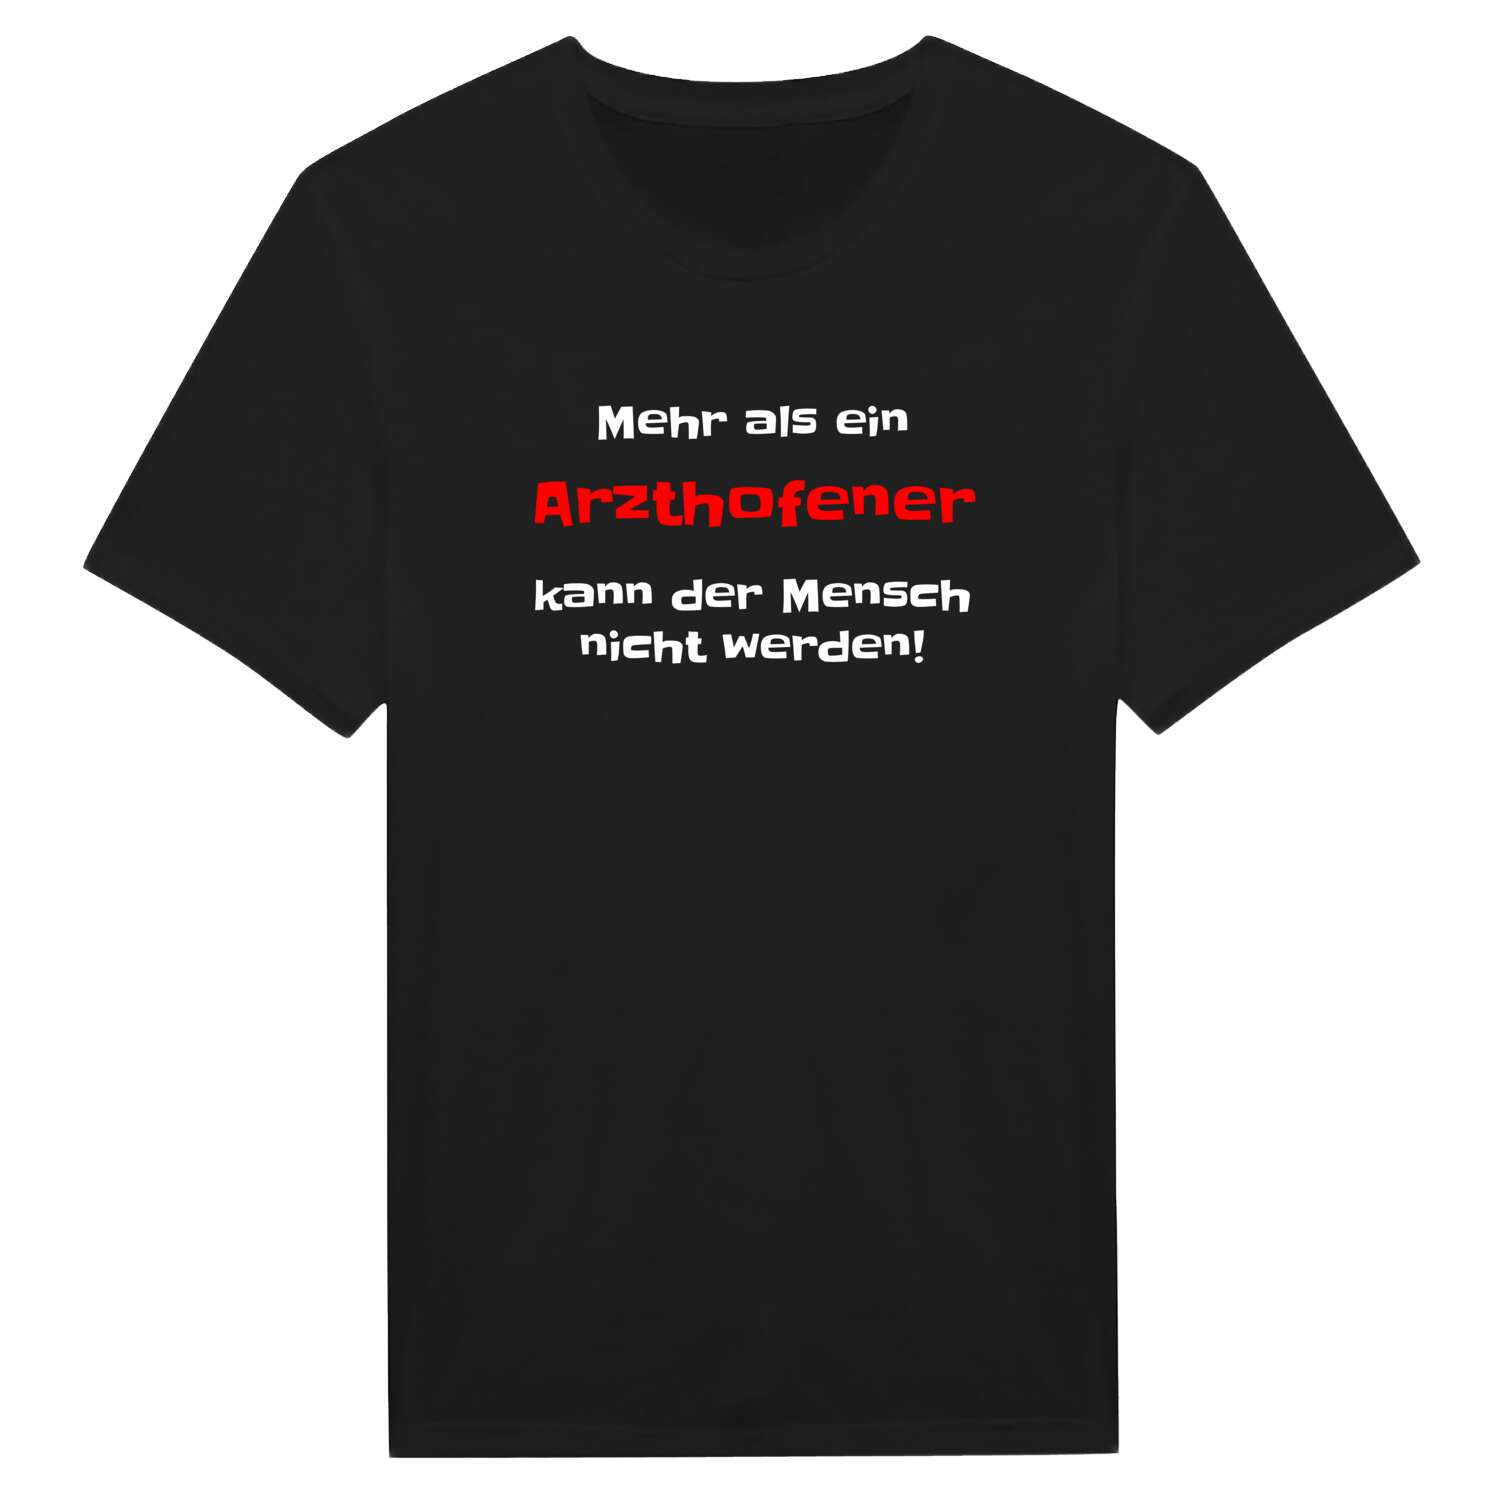 Arzthofen T-Shirt »Mehr als ein«